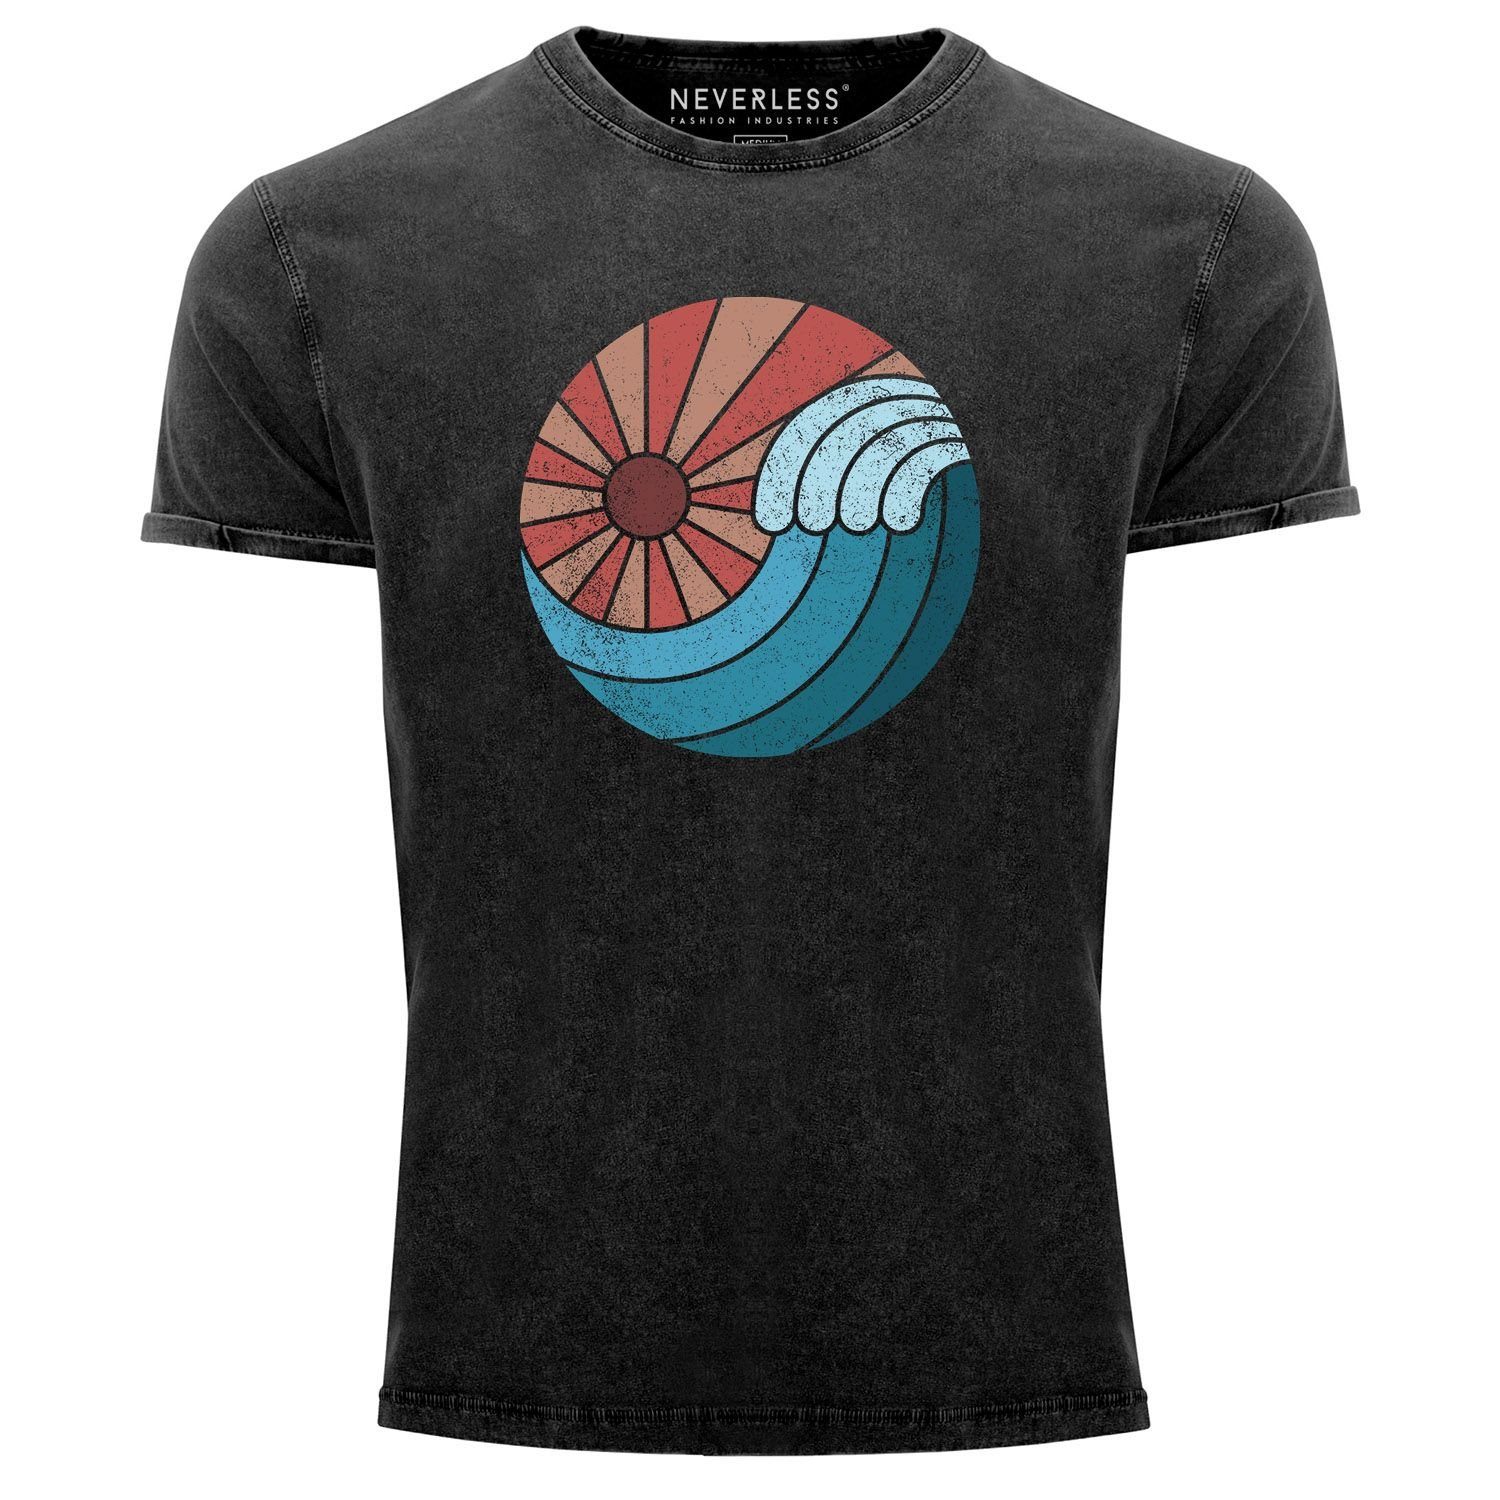 Printshirt T-Shirt Herren Sonne Retro Used Look Aufdruck mit Vintage Print-Shirt Welle Neverless Shirt Sommer Print Wave Neverless®